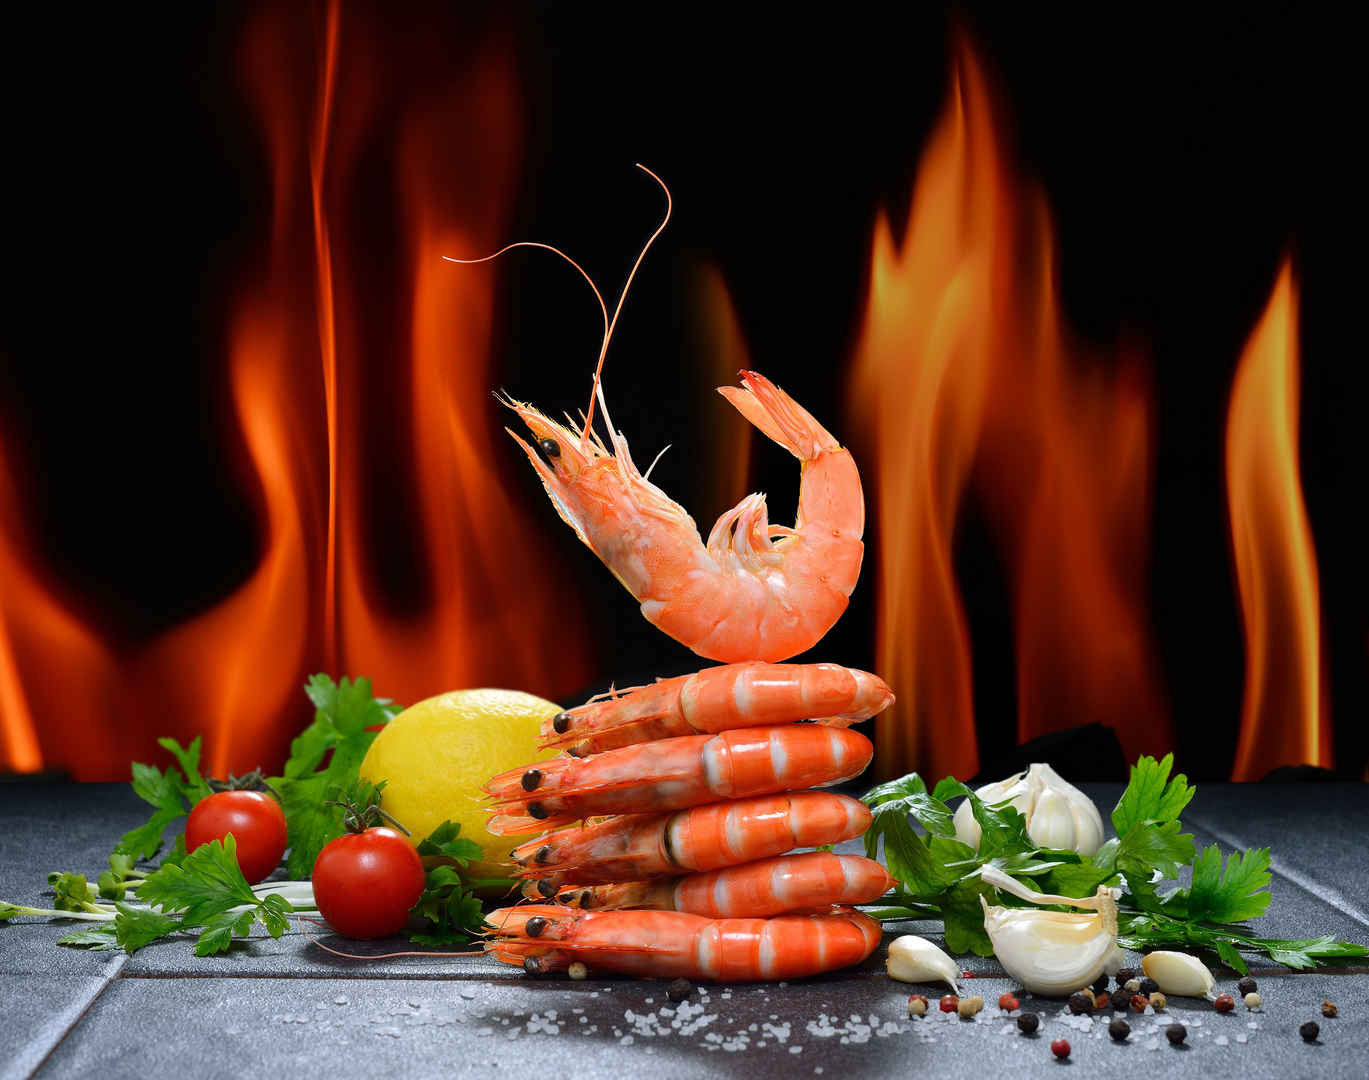 番茄 虾 盐 海鲜 蔬菜 胡椒 4K美食图片-